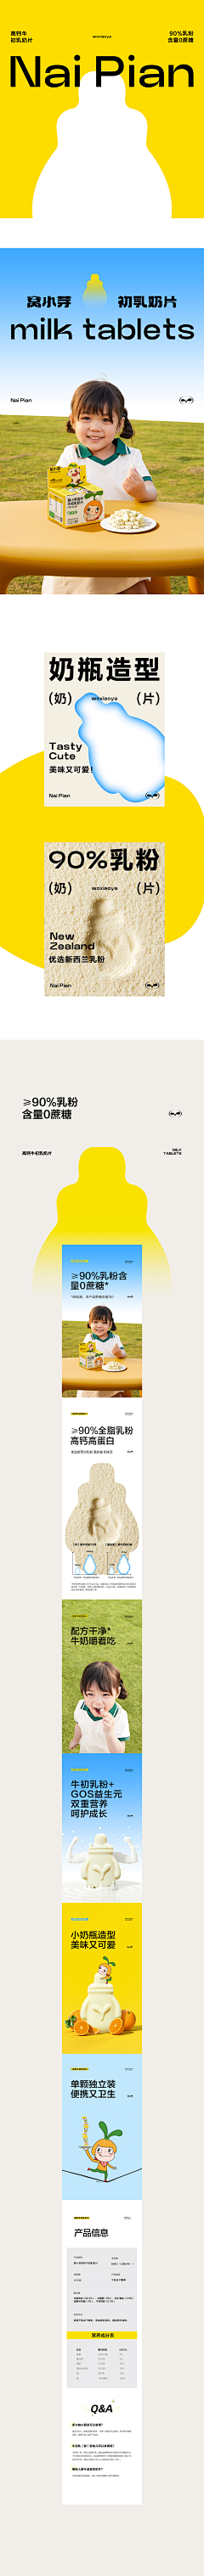 大豆狗com采集到食品详情